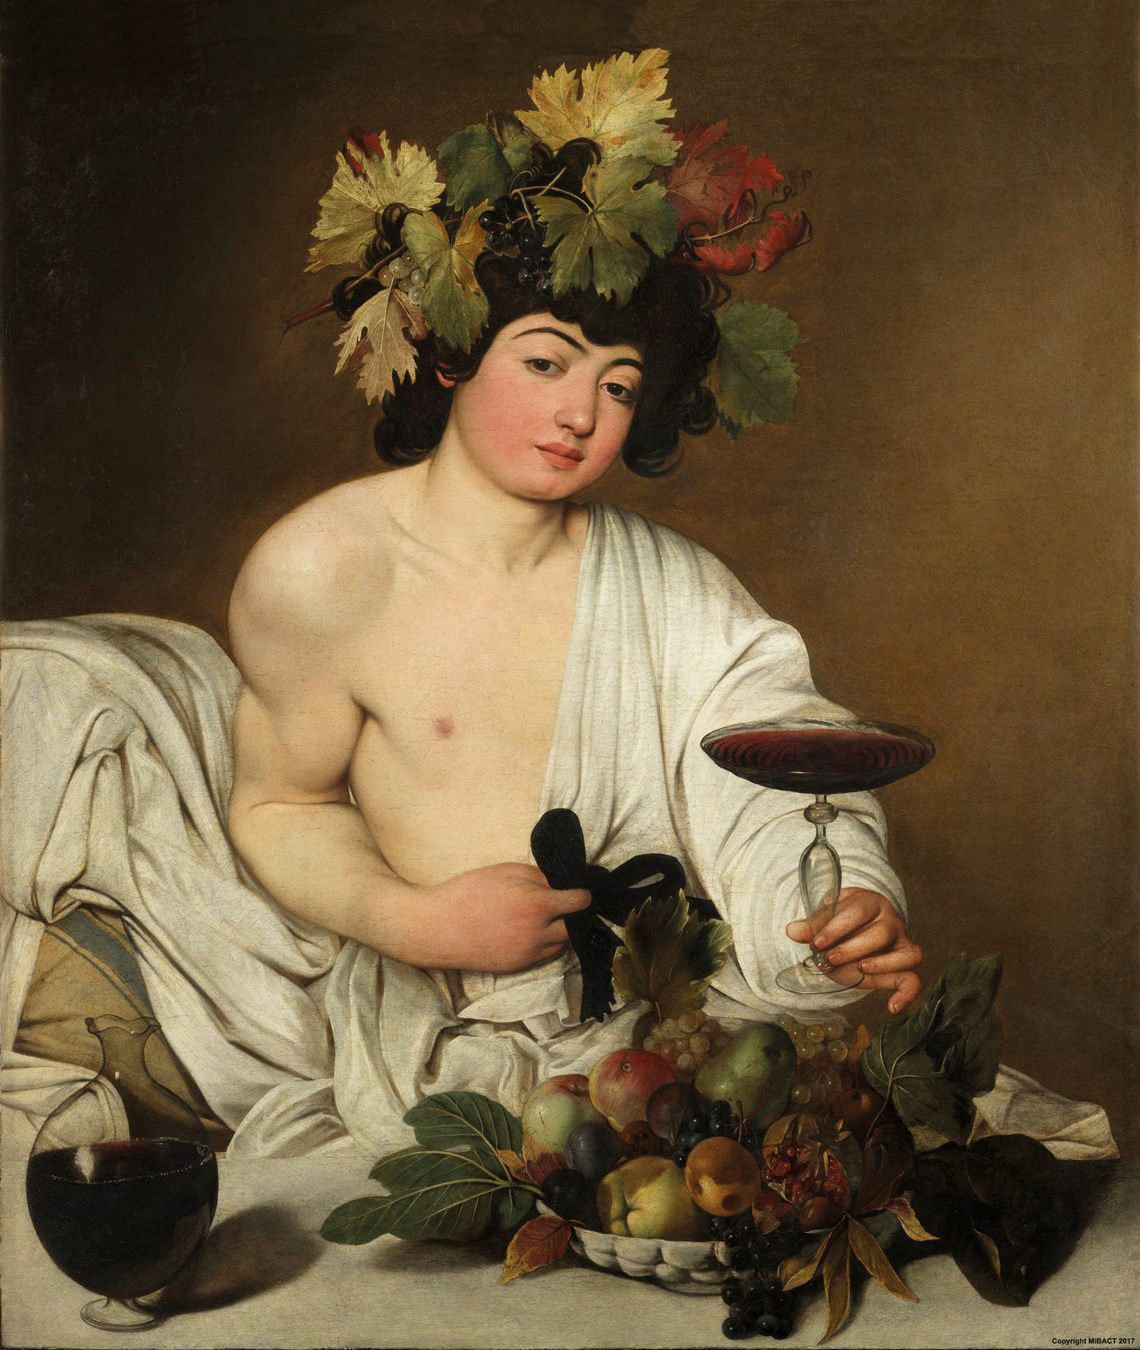 Pintura de Baco, o deus grego do vinho.